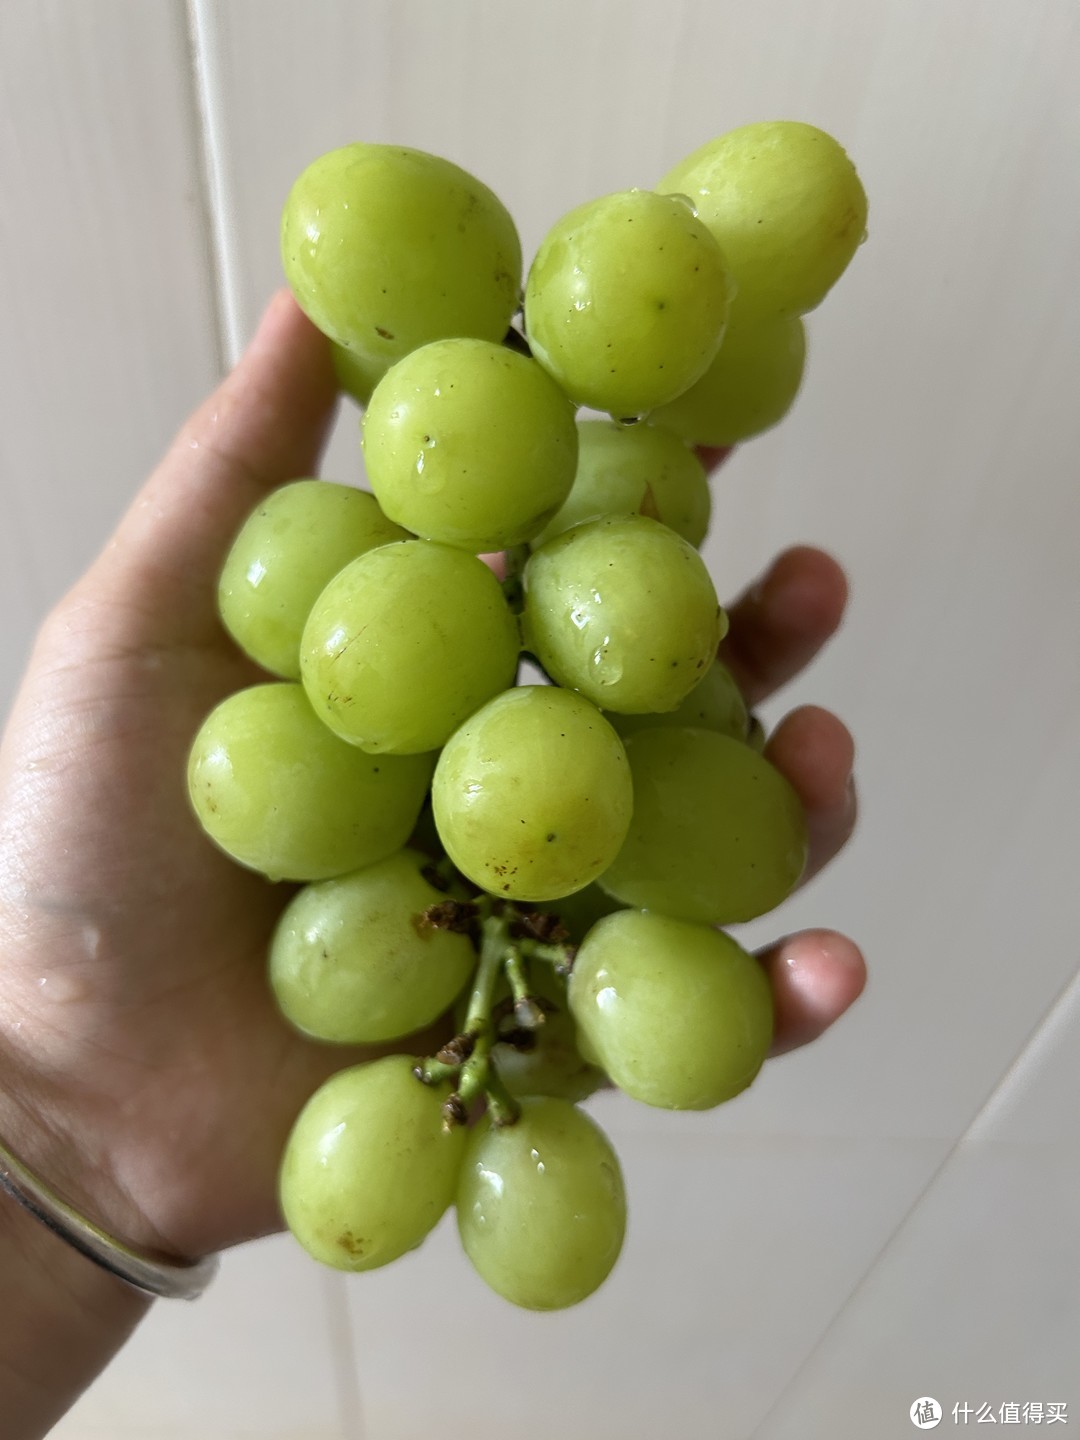 葡萄是一种美味可口的水果，它具有丰富的营养价值和独特的口感。葡萄的外皮光滑而有弹性﻿